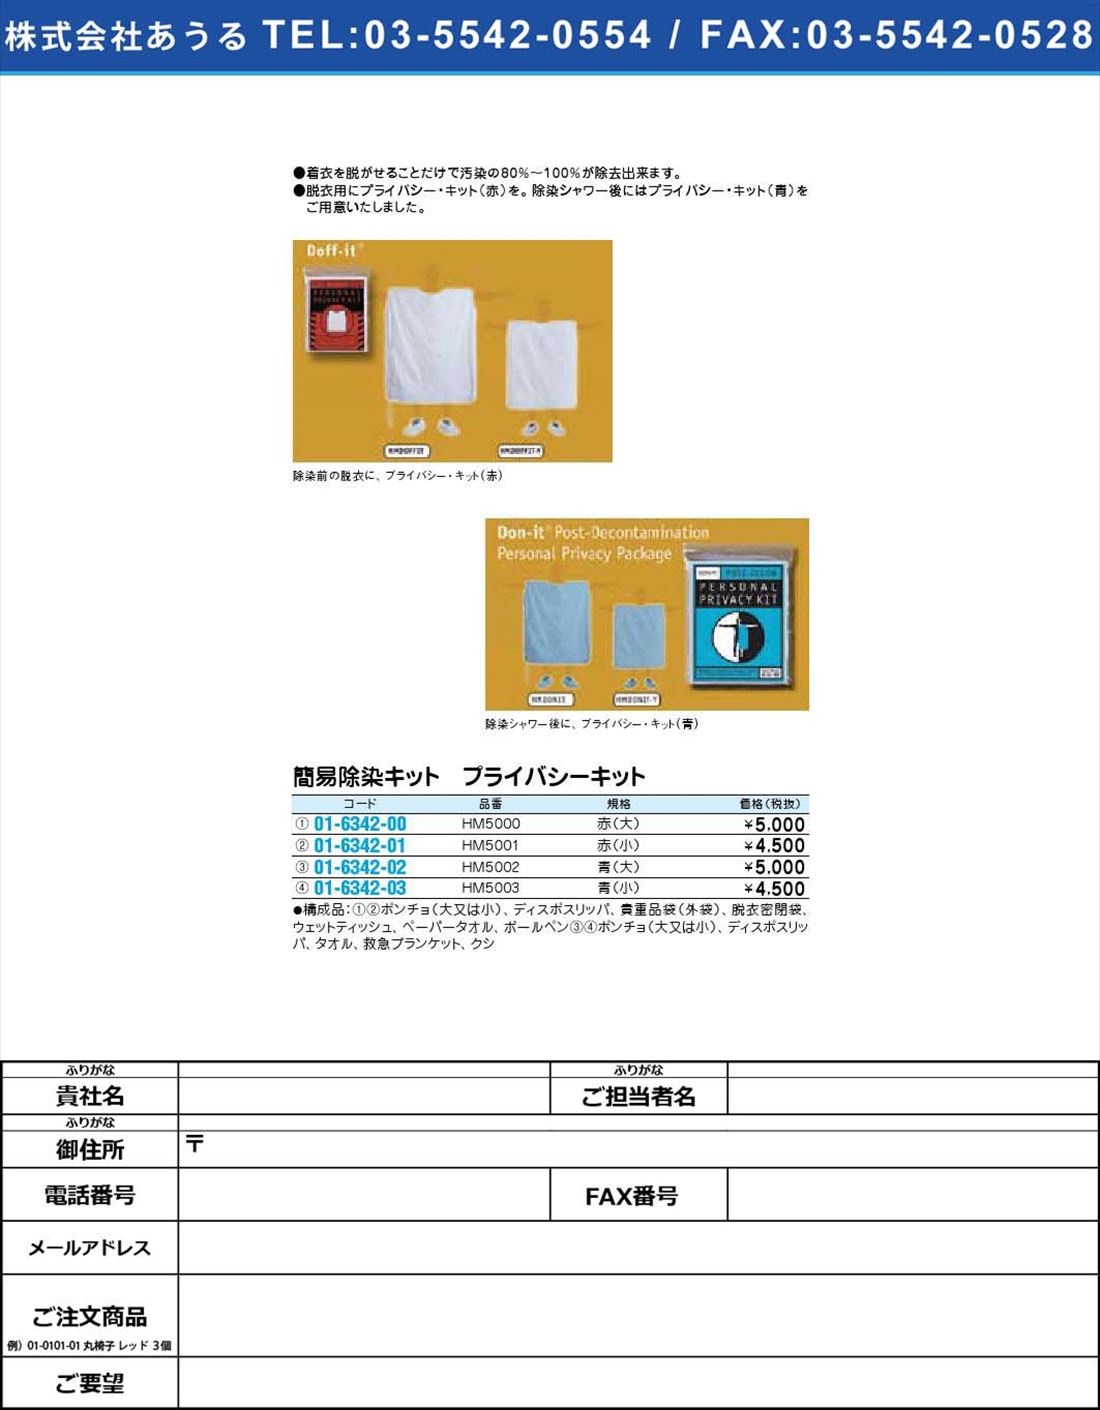 簡易除染キット プライバシーキット HM5003(01-6342-03)【1個単位】